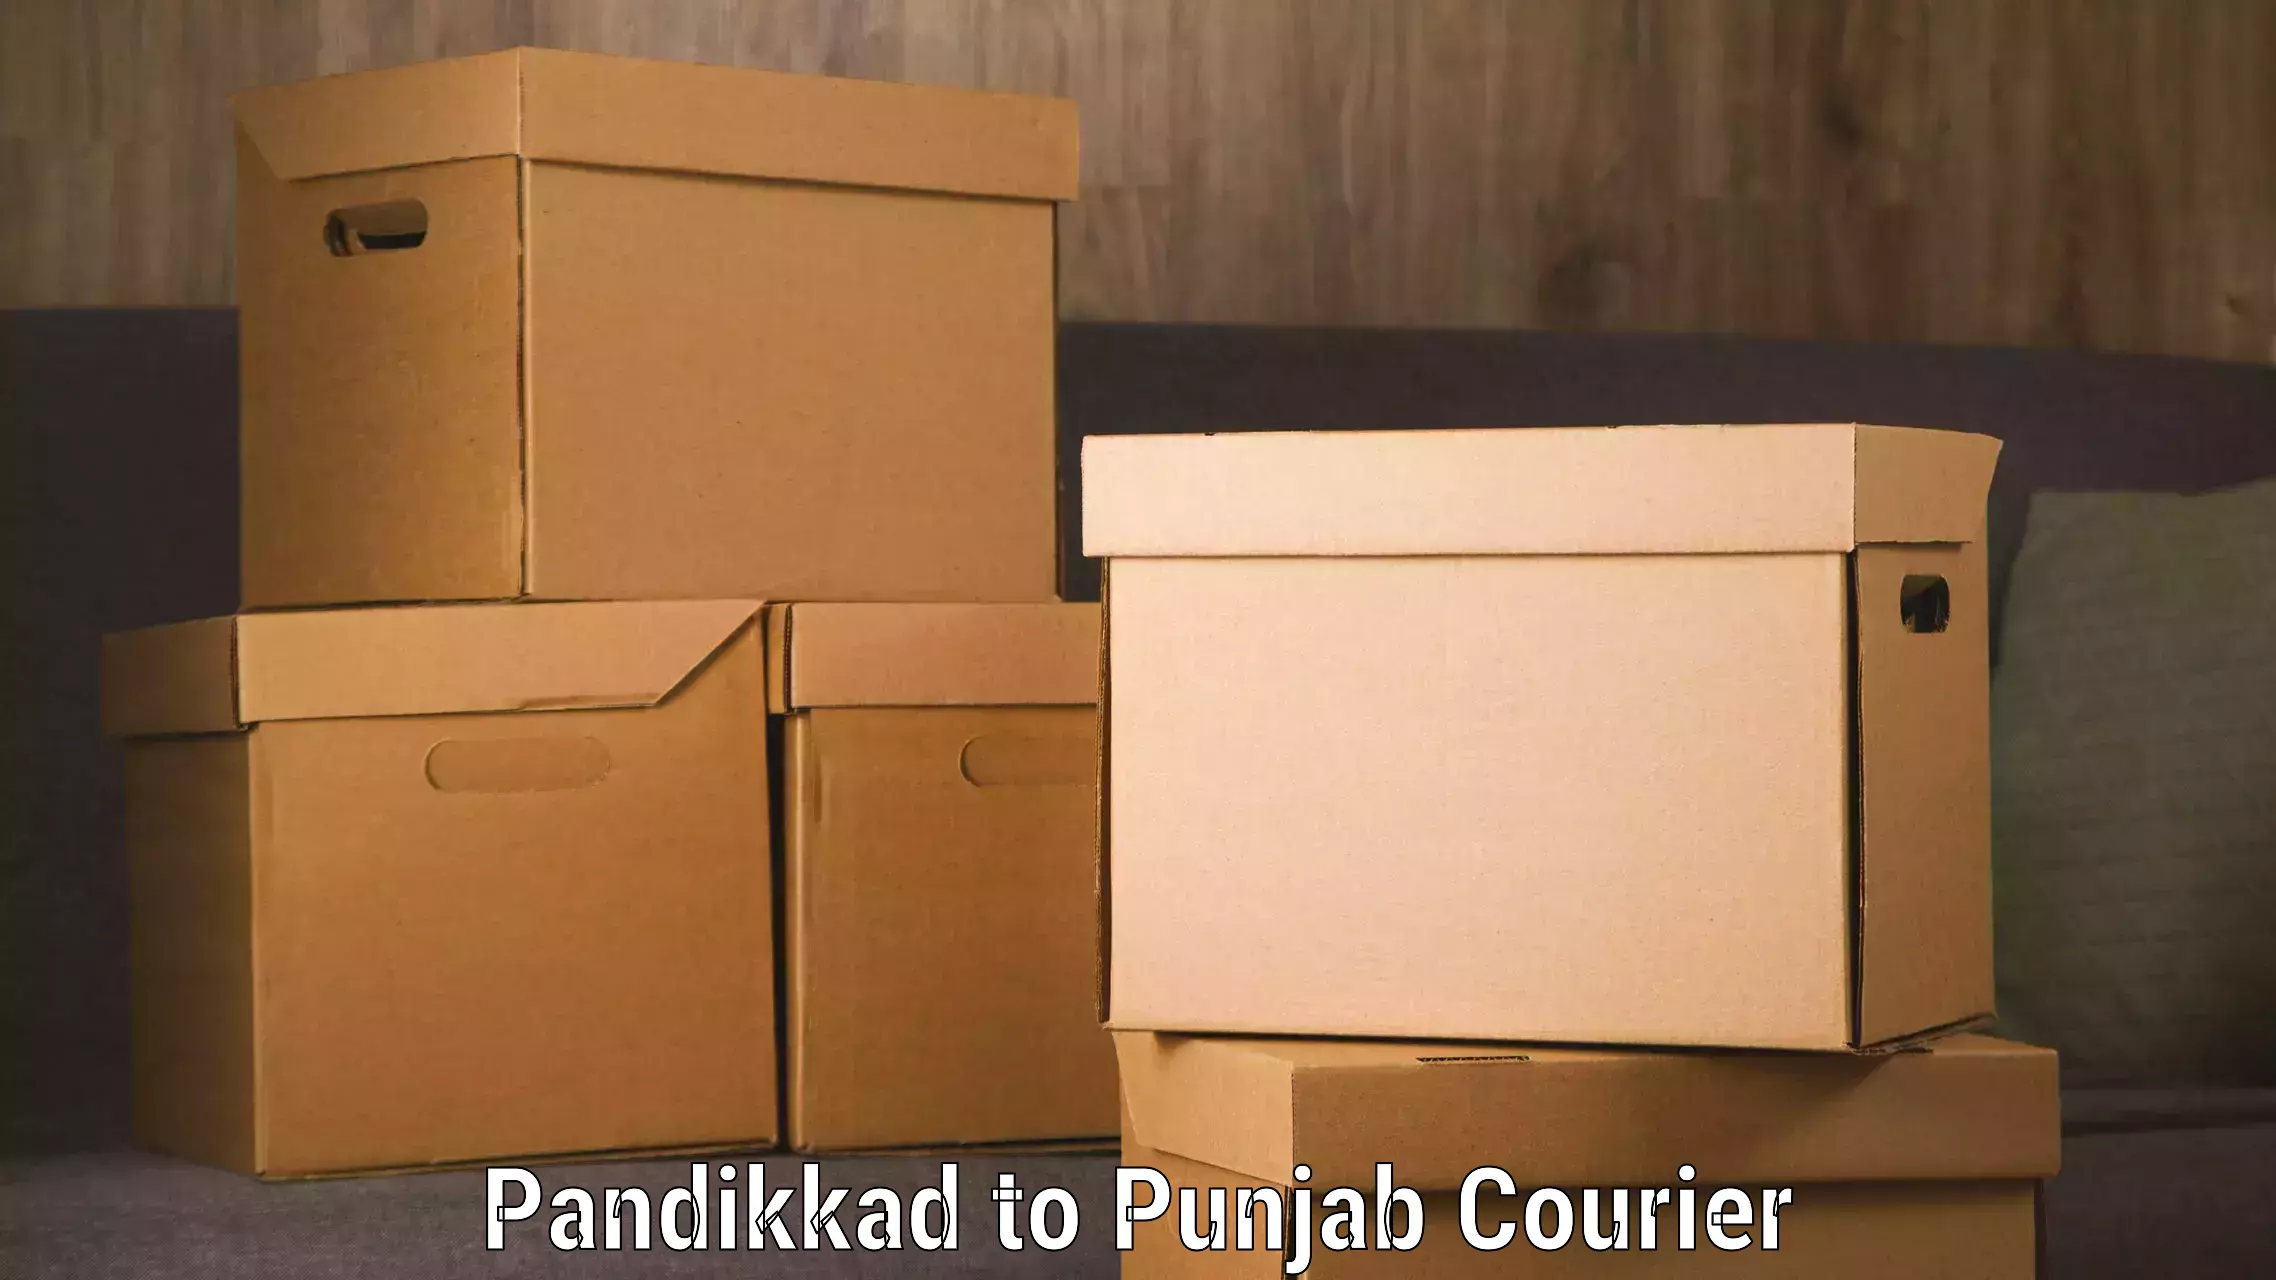 Secure packaging in Pandikkad to Guru Nanak Dev University Amritsar